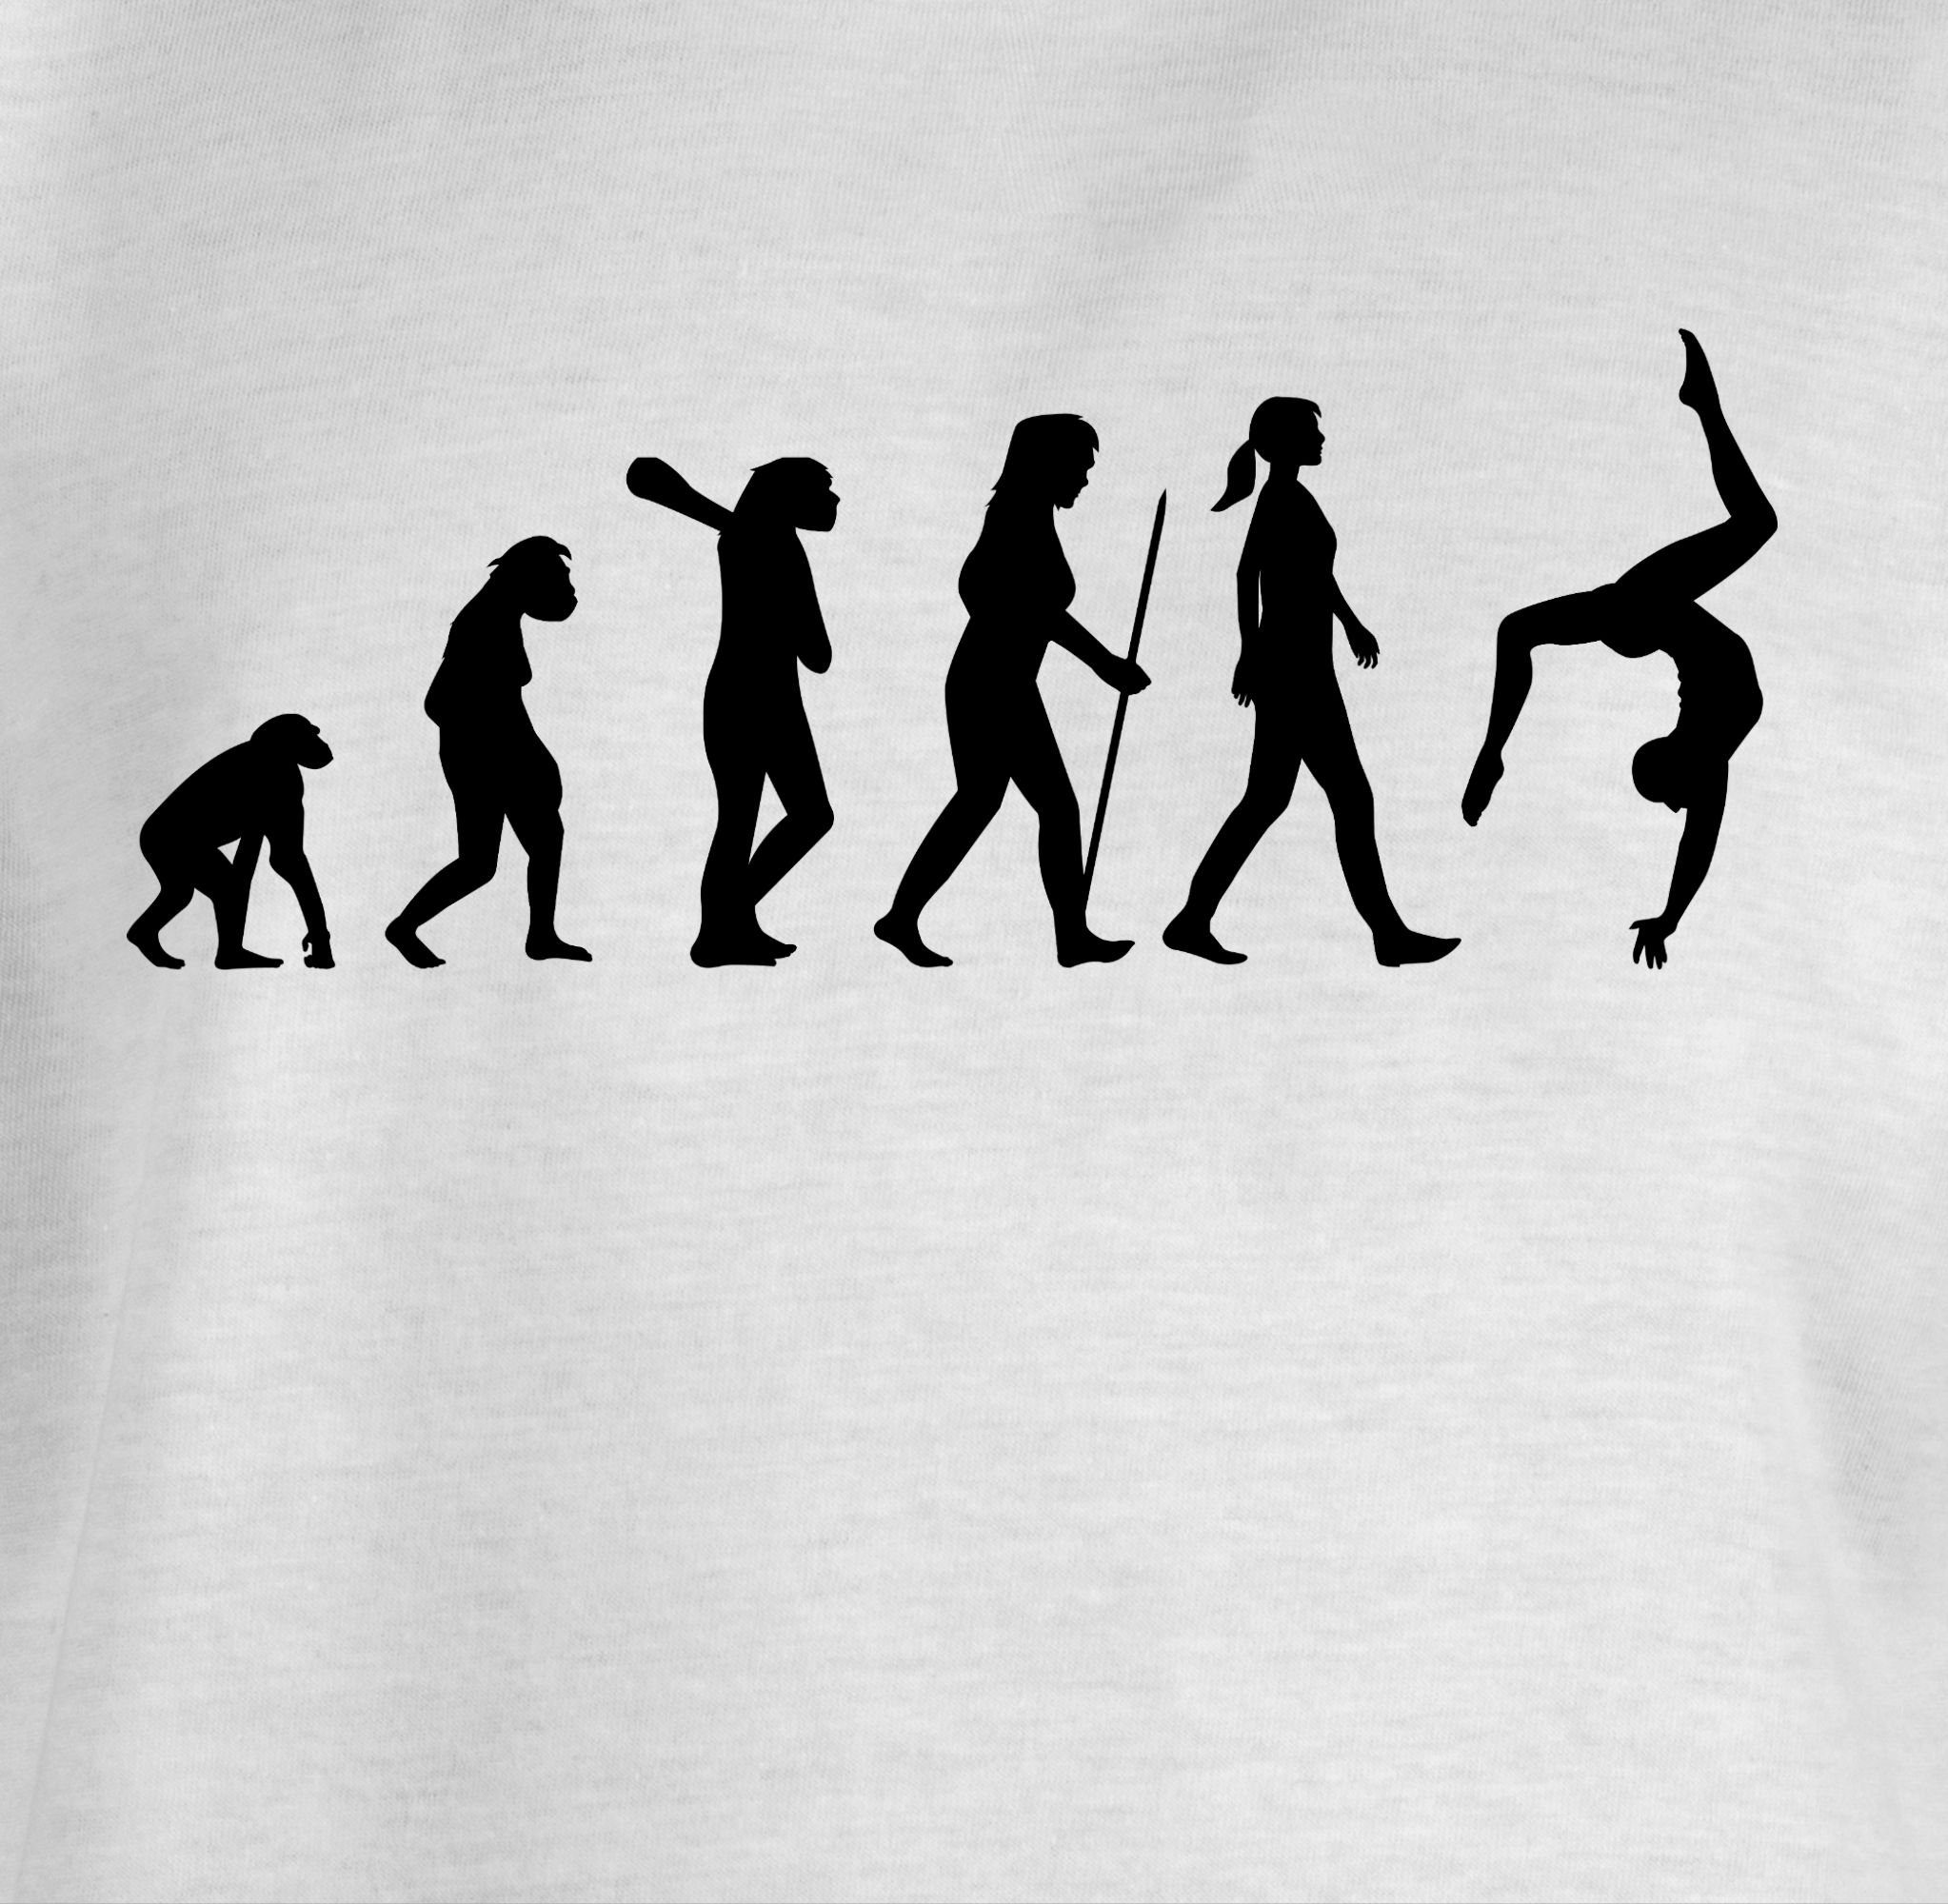 Kinder Kids (Gr. 92 -146) Shirtracer T-Shirt Evolution Turnen - Evolution Kinder - Mädchen Kinder T-Shirt Entwicklung Geschichte